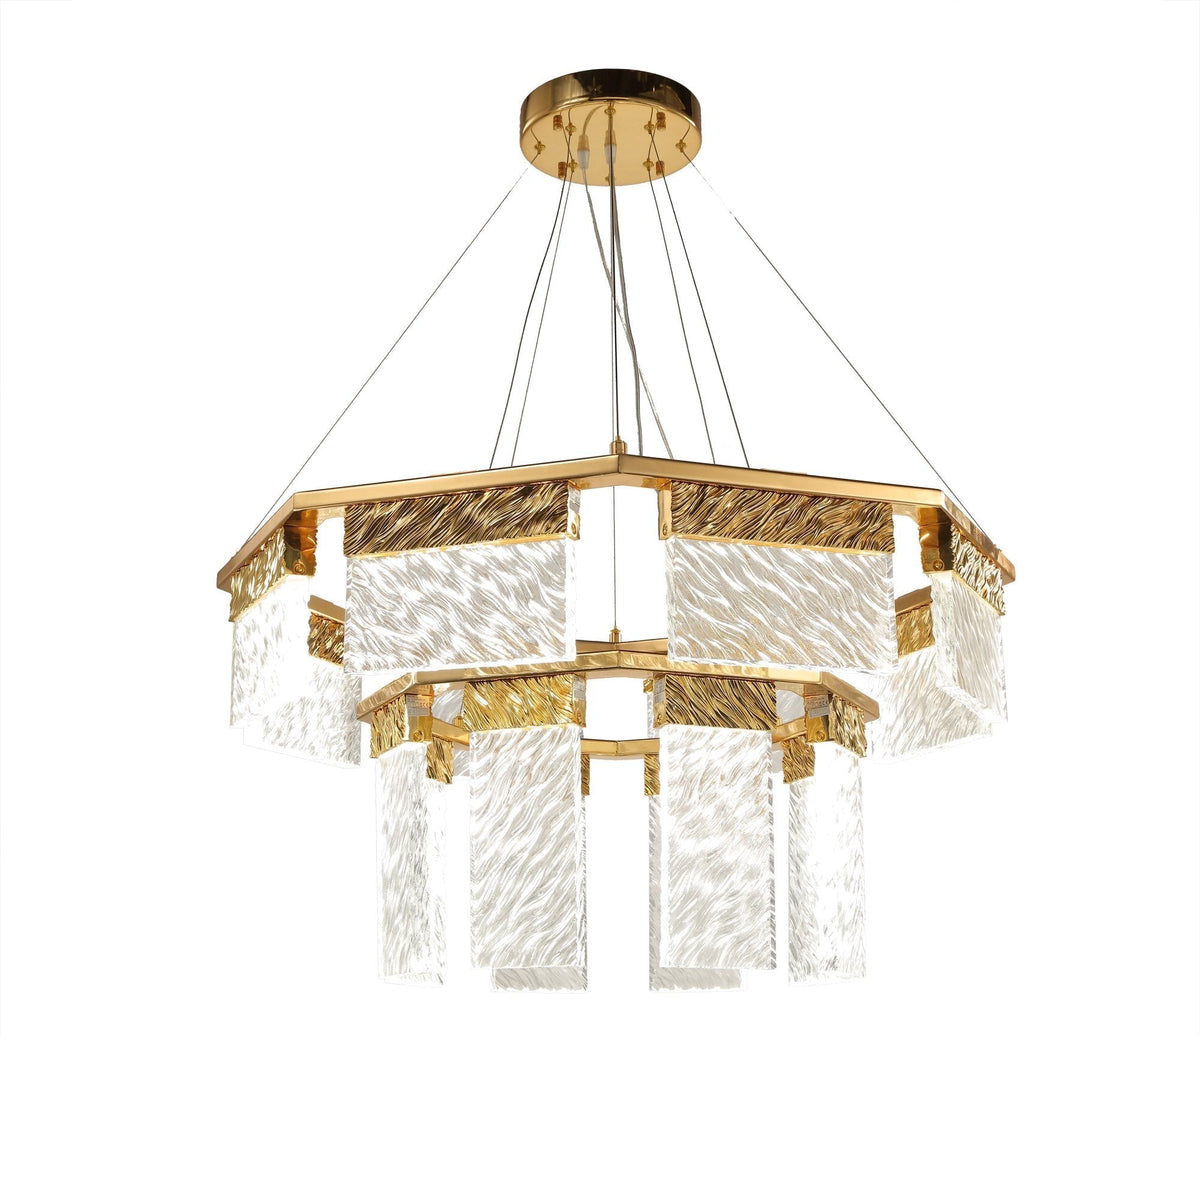 Joseph 2-Tier Round LED Chandelier, Modern Glass Lamp for Living Room, Bedroom, Dining Room